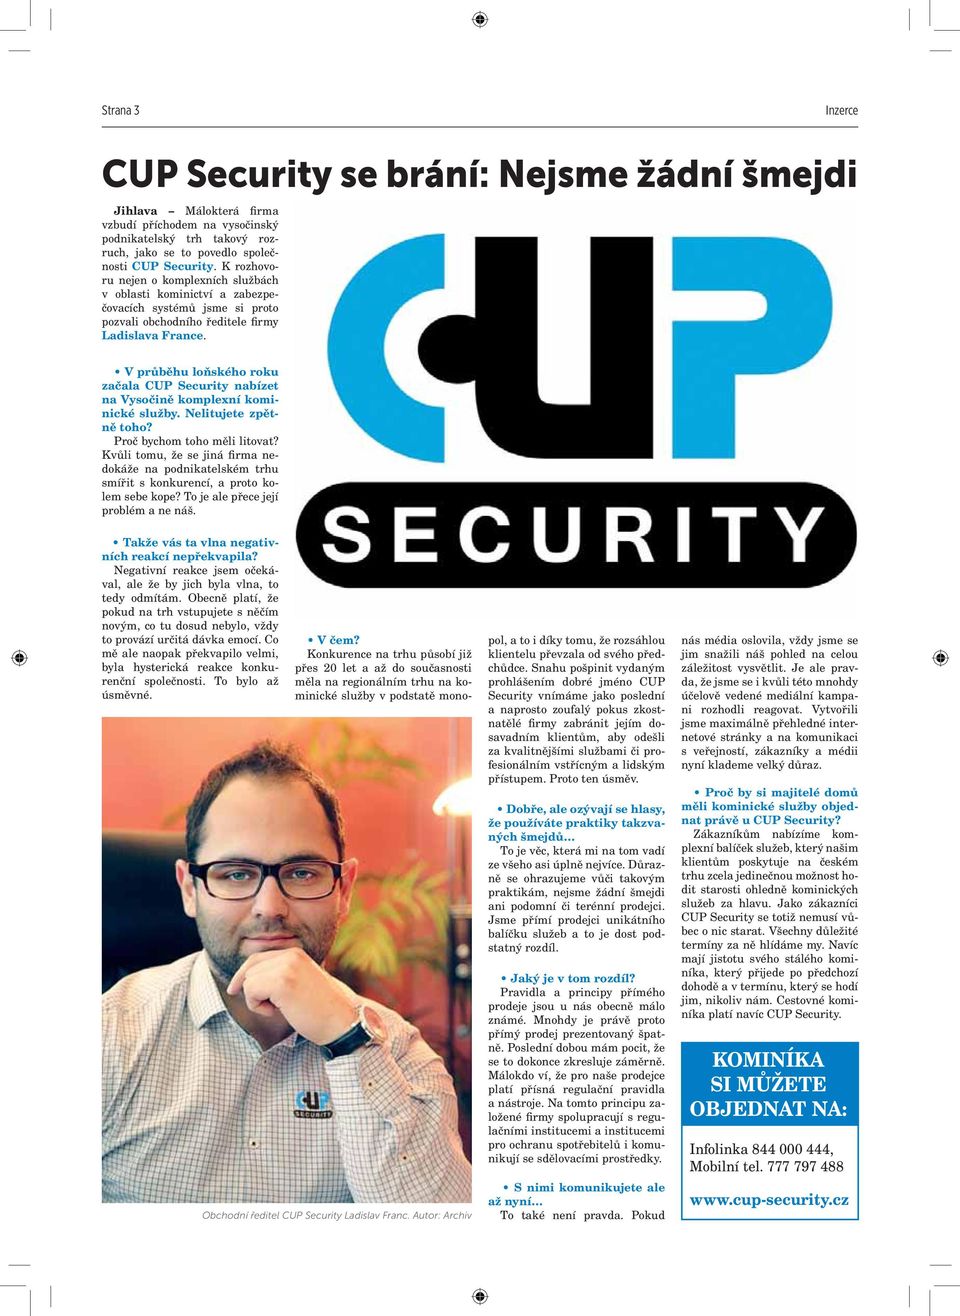 V průběhu loňského roku začala CUP Security nabízet na Vysočině komplexní kominické služby. Nelitujete zpětně toho? Proč bychom toho měli litovat?